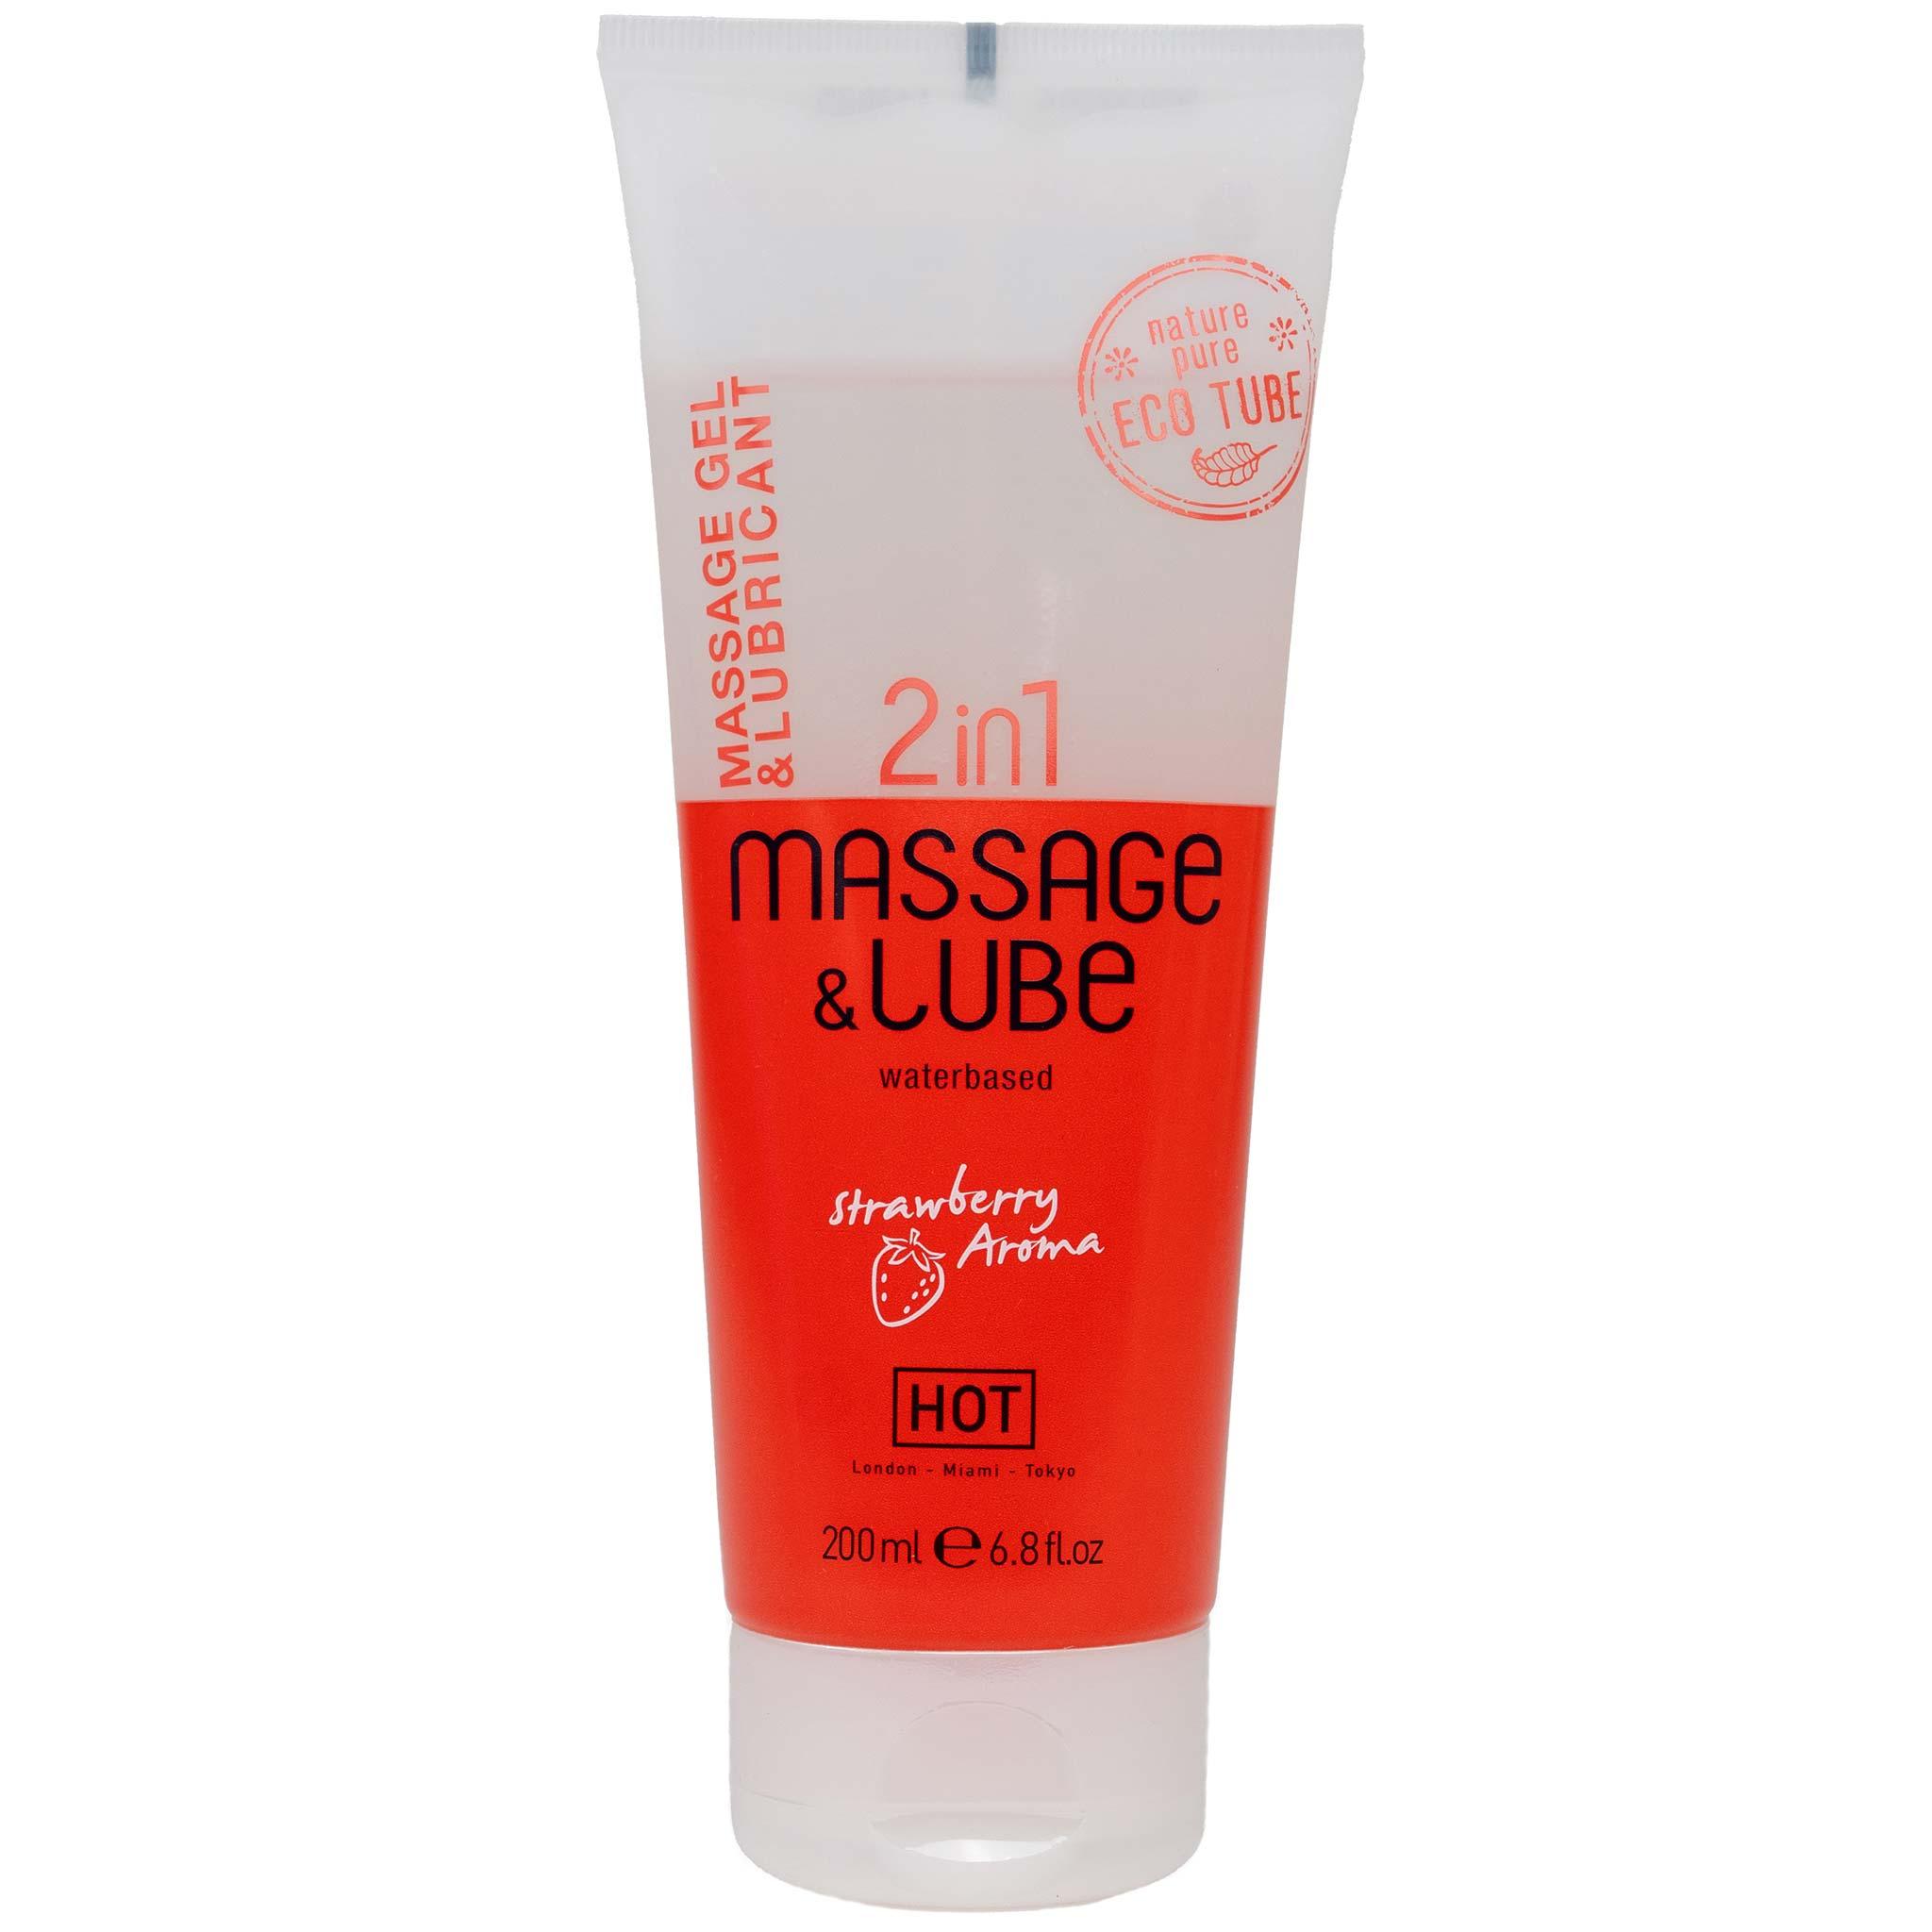 HOT Massage-& Glide gel 2in1 Strawberry, 200ml/6.8fl.oz